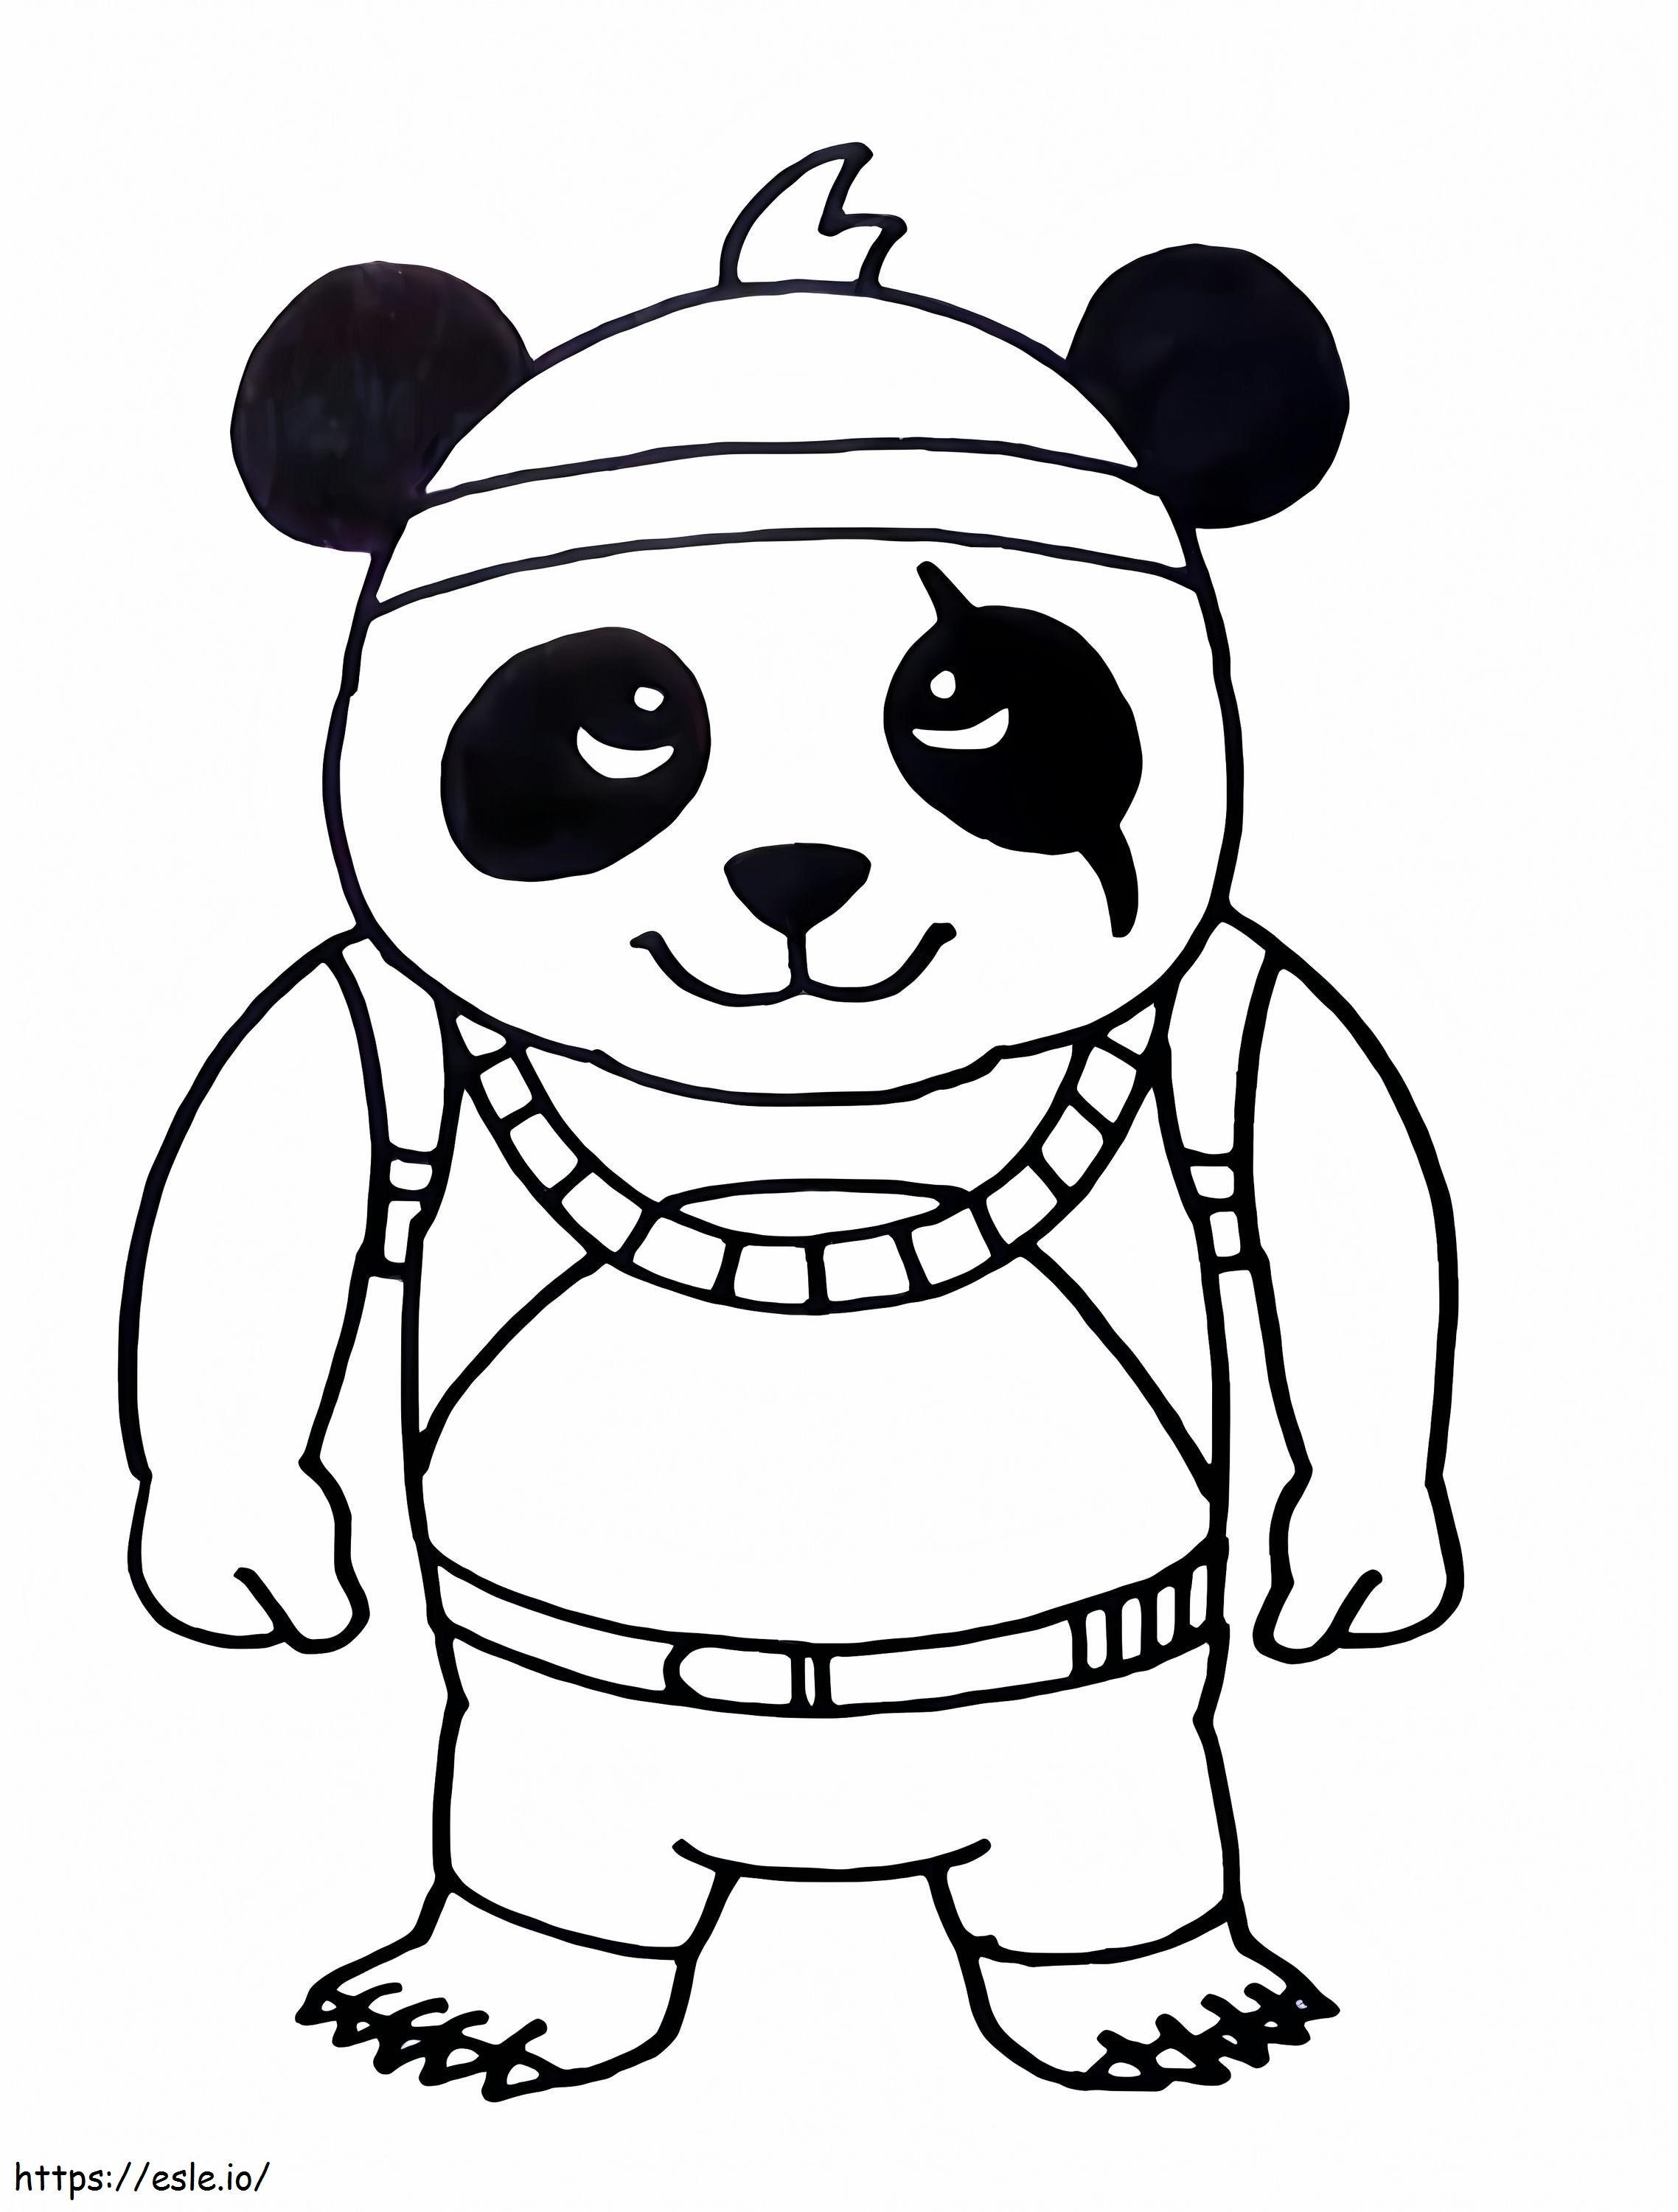 Coloriage Détective Panda Free Fire à imprimer dessin